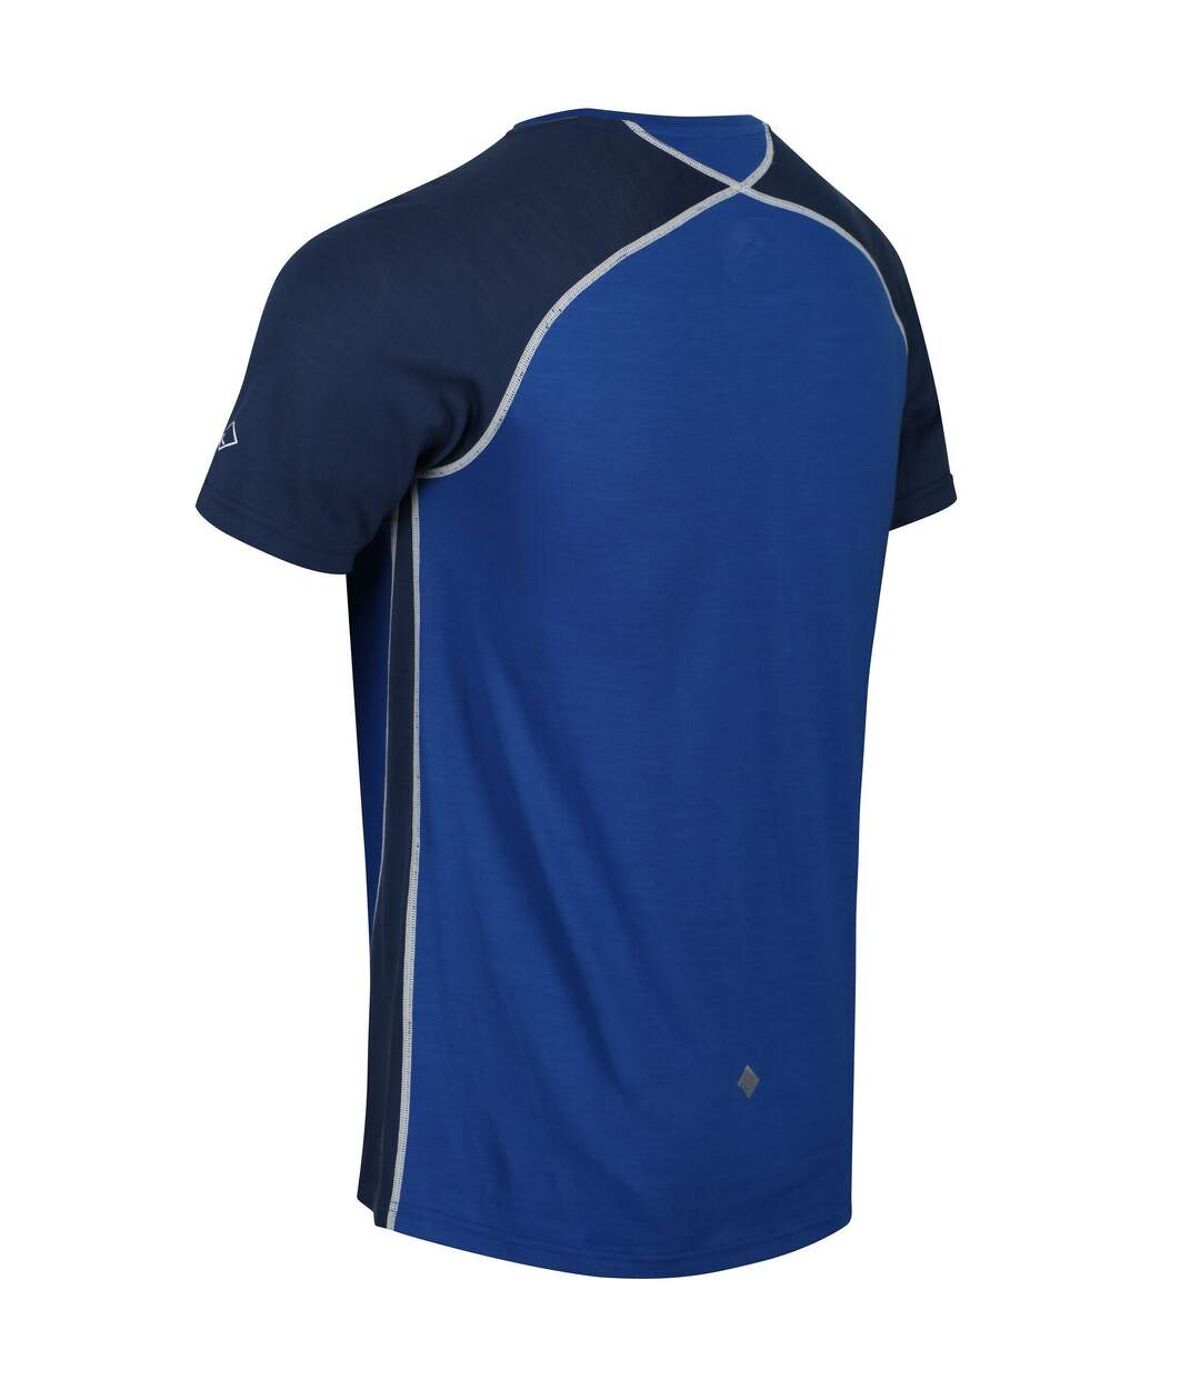 Regatta - T-shirt TORNELL - Hommes (Bleu/denim foncé) - UTRG4935